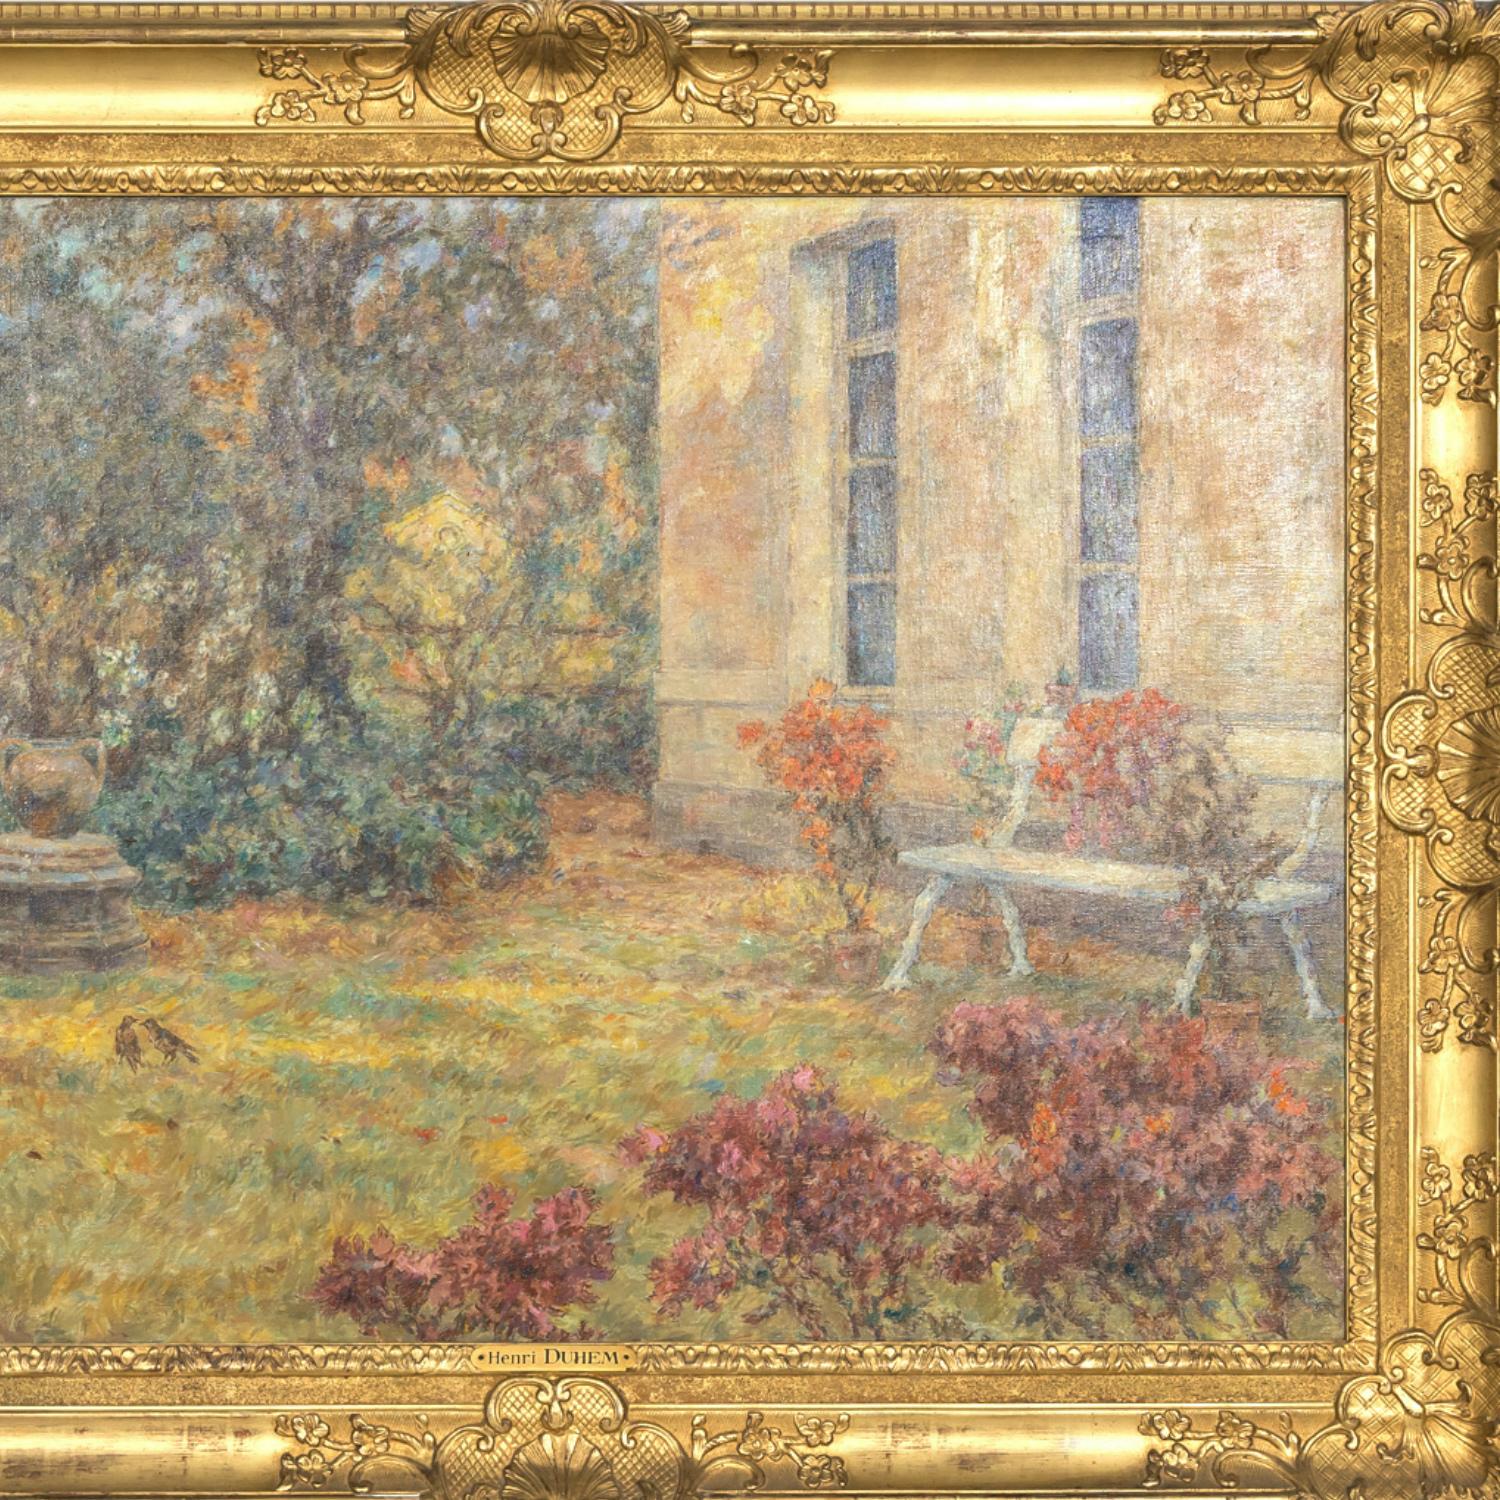 Grand paysage de jardin impressionniste français encadré à l'huile par Henri Duhem, signé 1